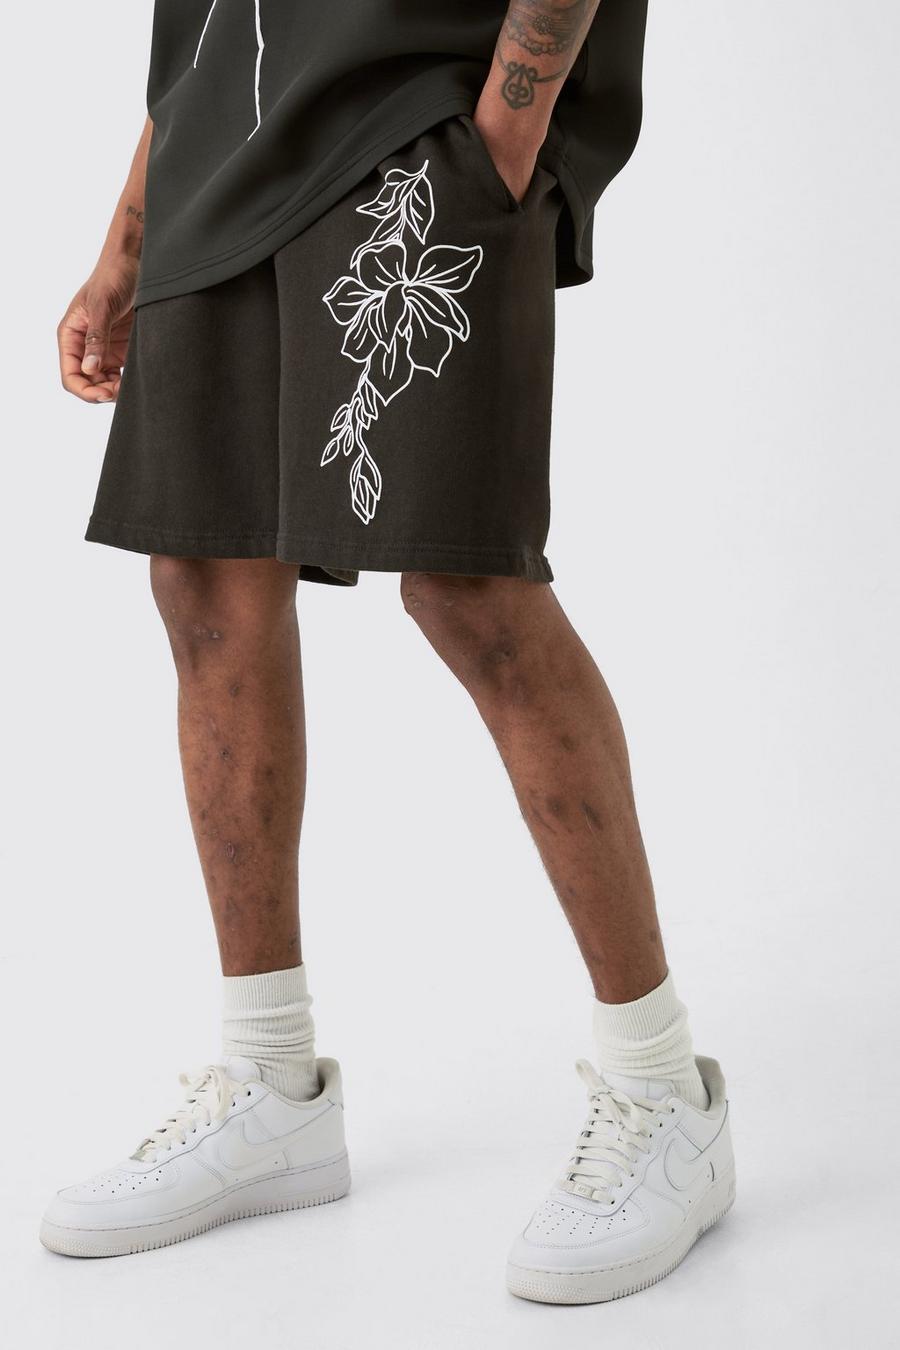 Tall lockere Jersey-Shorts mit Print, Black